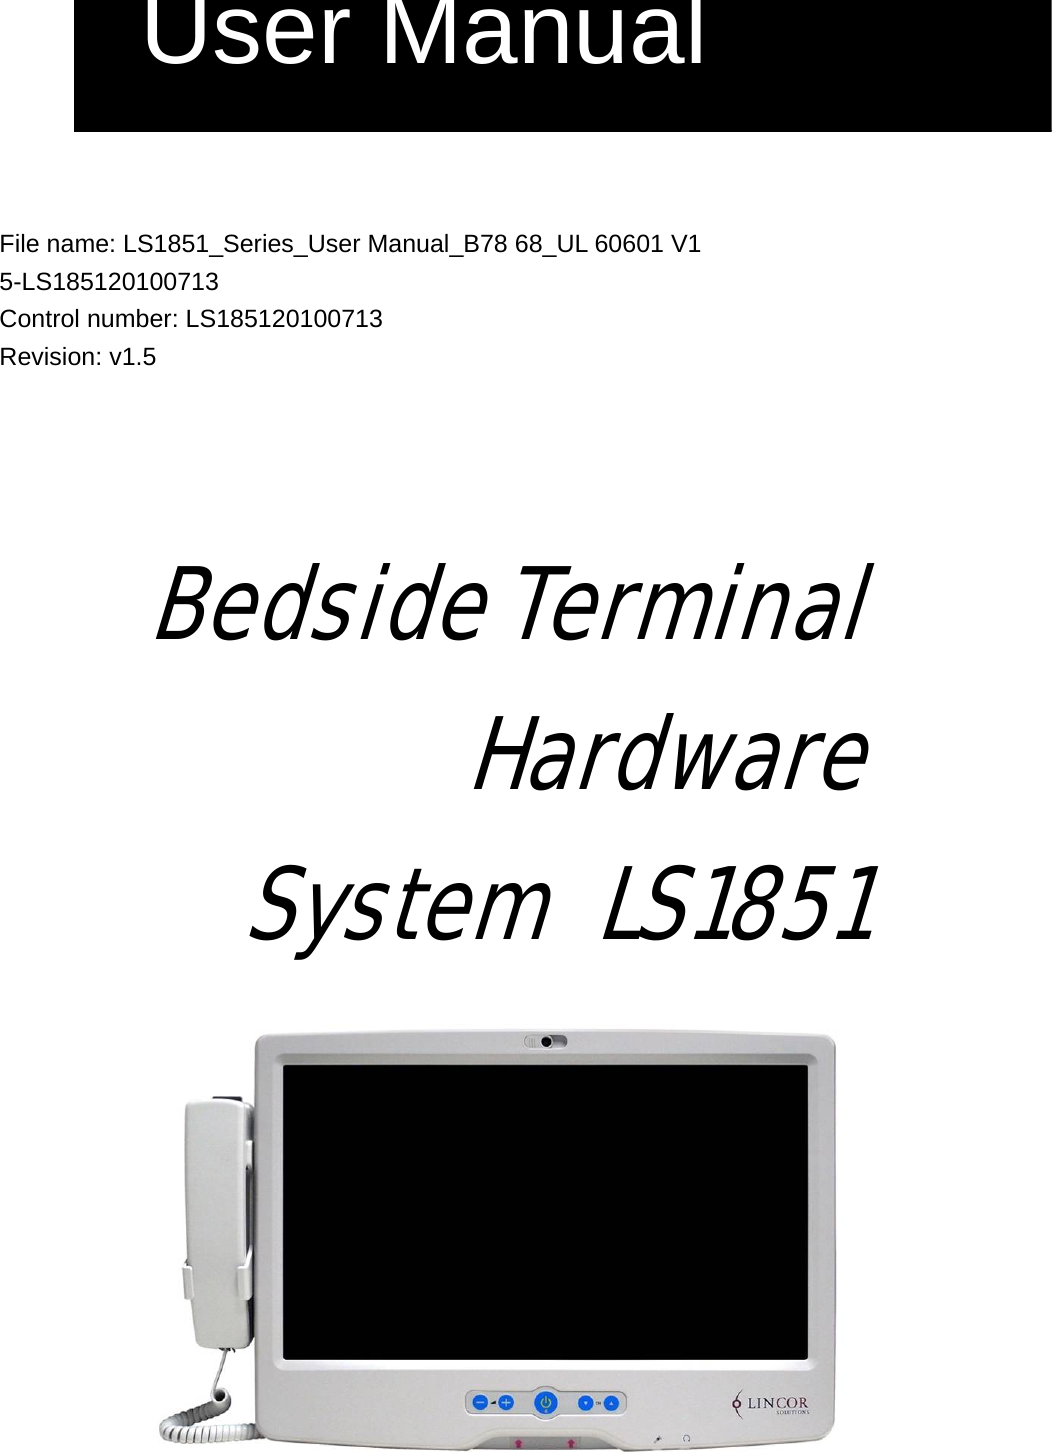    File name: LS1851_Series_User Manual_B78 68_UL 60601 V1 5-LS185120100713 Control number: LS185120100713 Revision: v1.5     Bedside Terminal Hardware  System LS1851  User Manual 